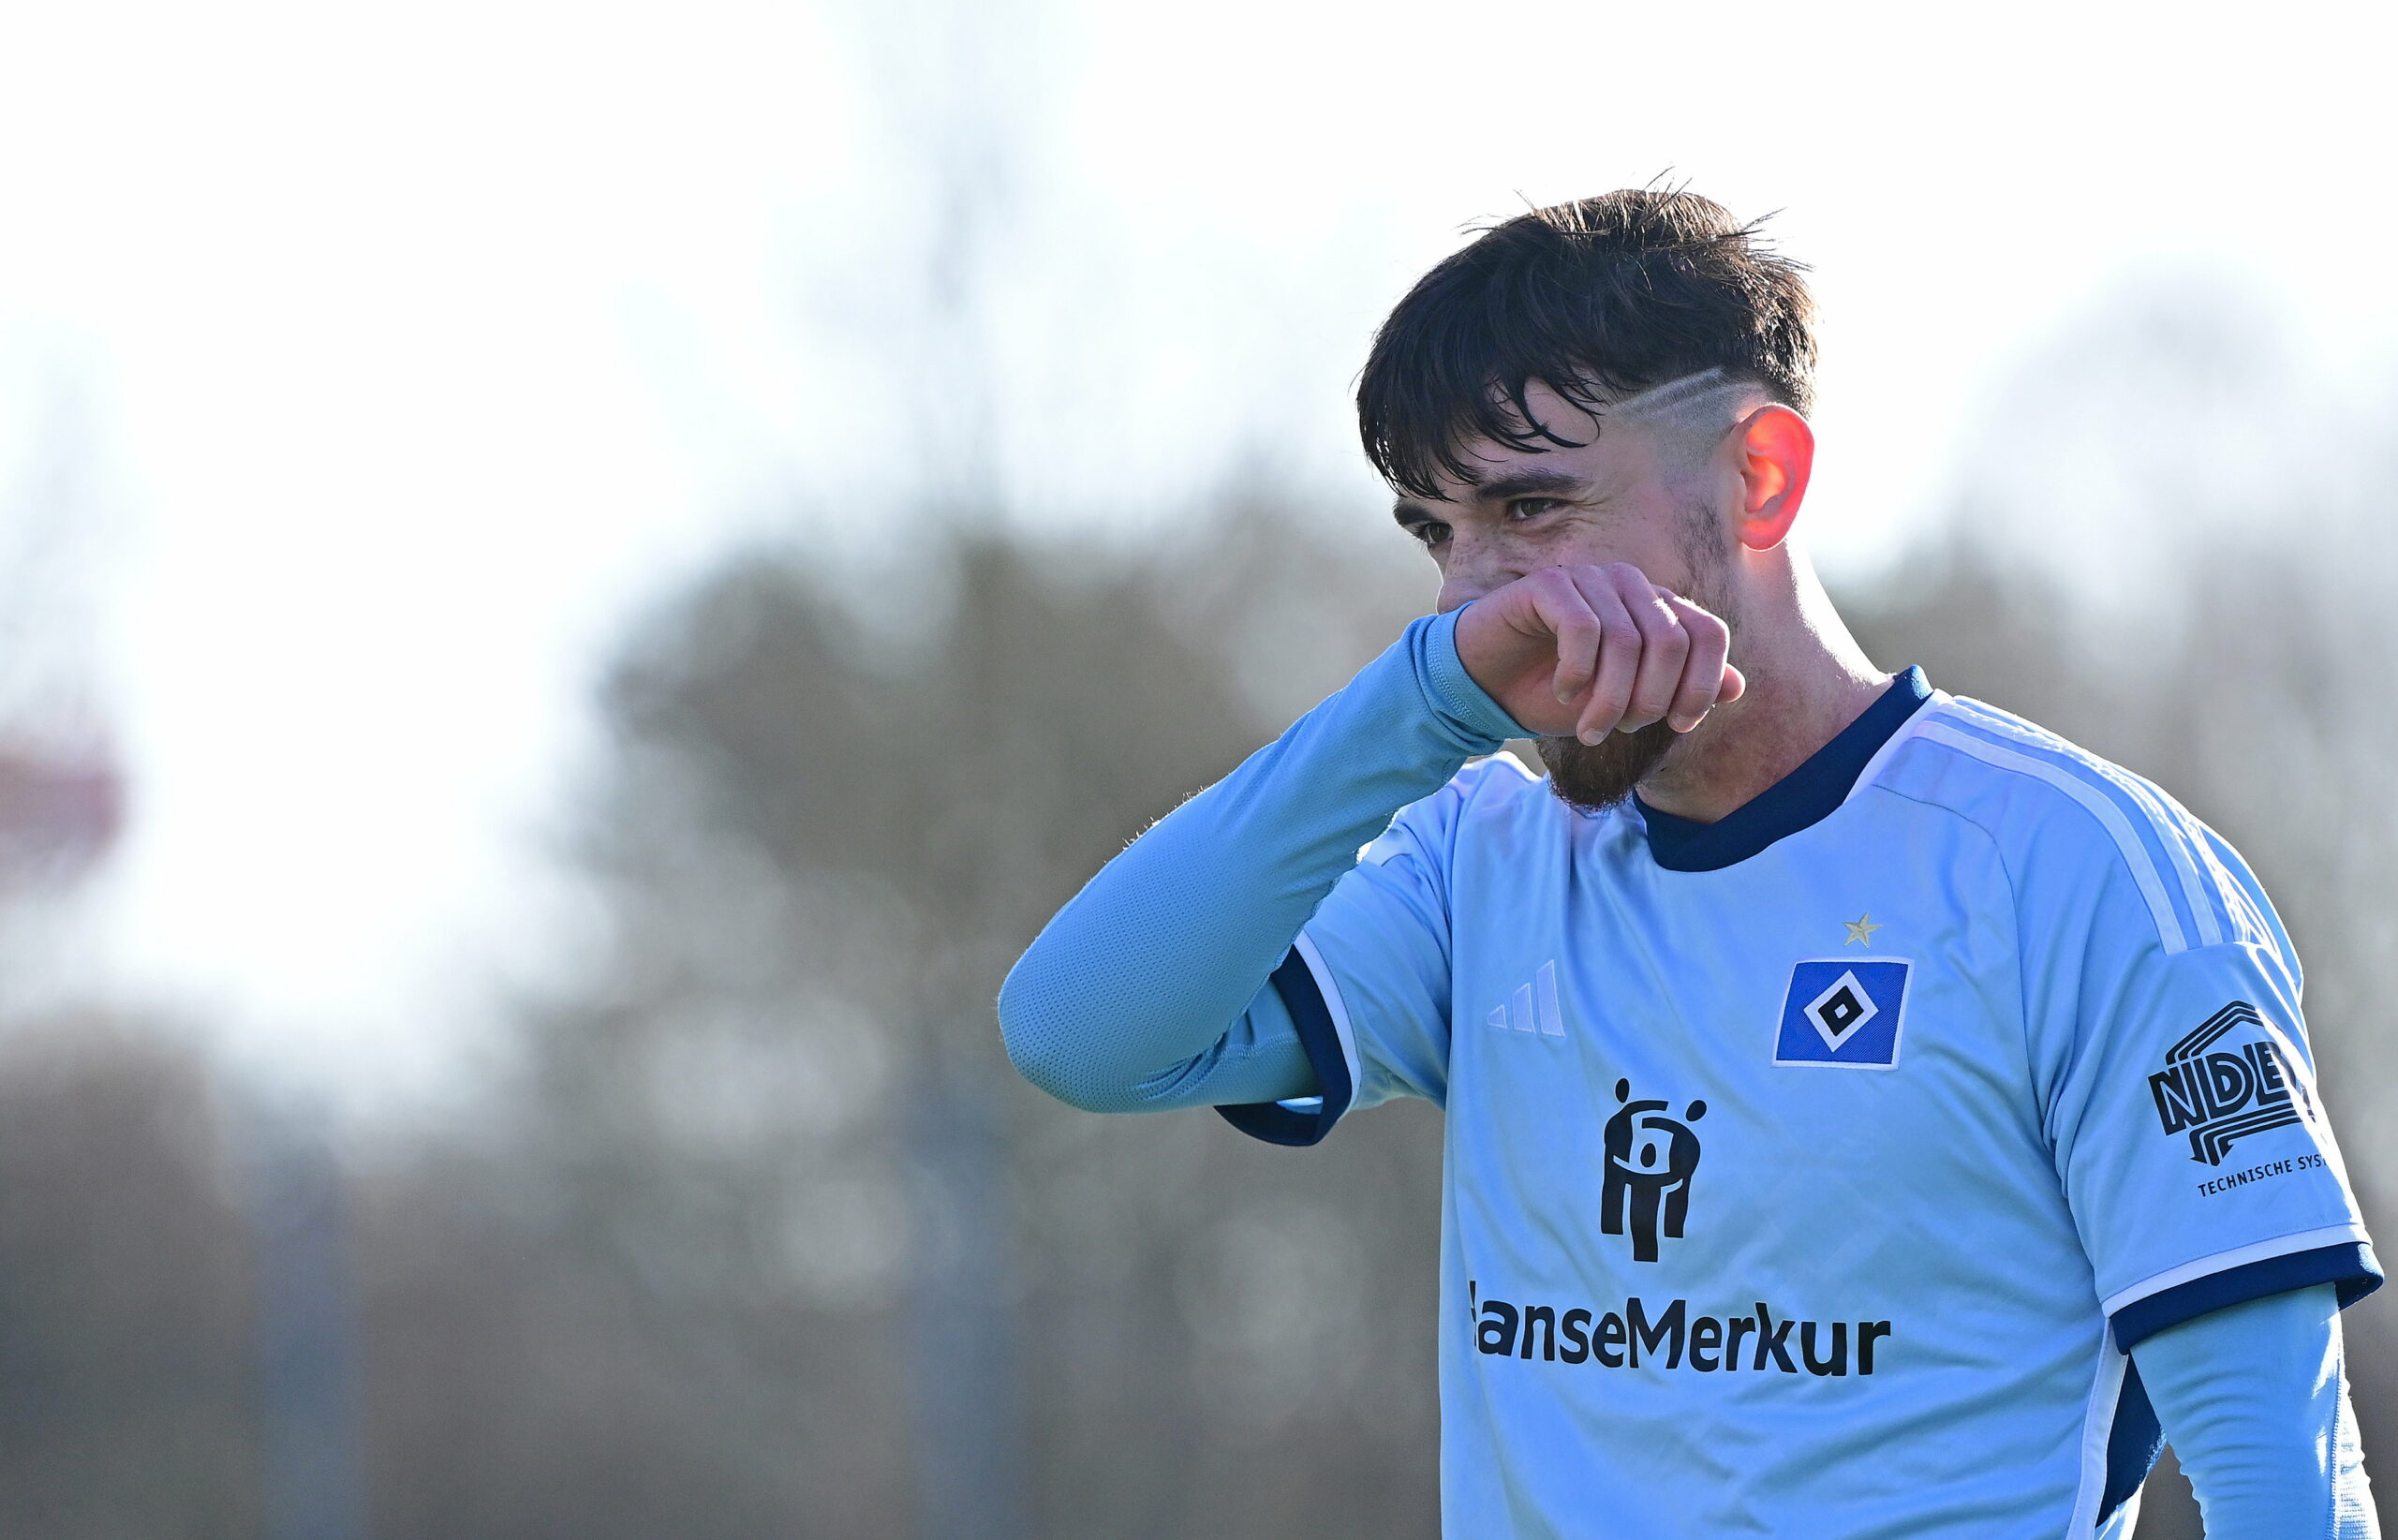 HSV-Talent Bilal Yalcinkaya wischt sich im Spiel die Nase mit seinem Trikotärmel.